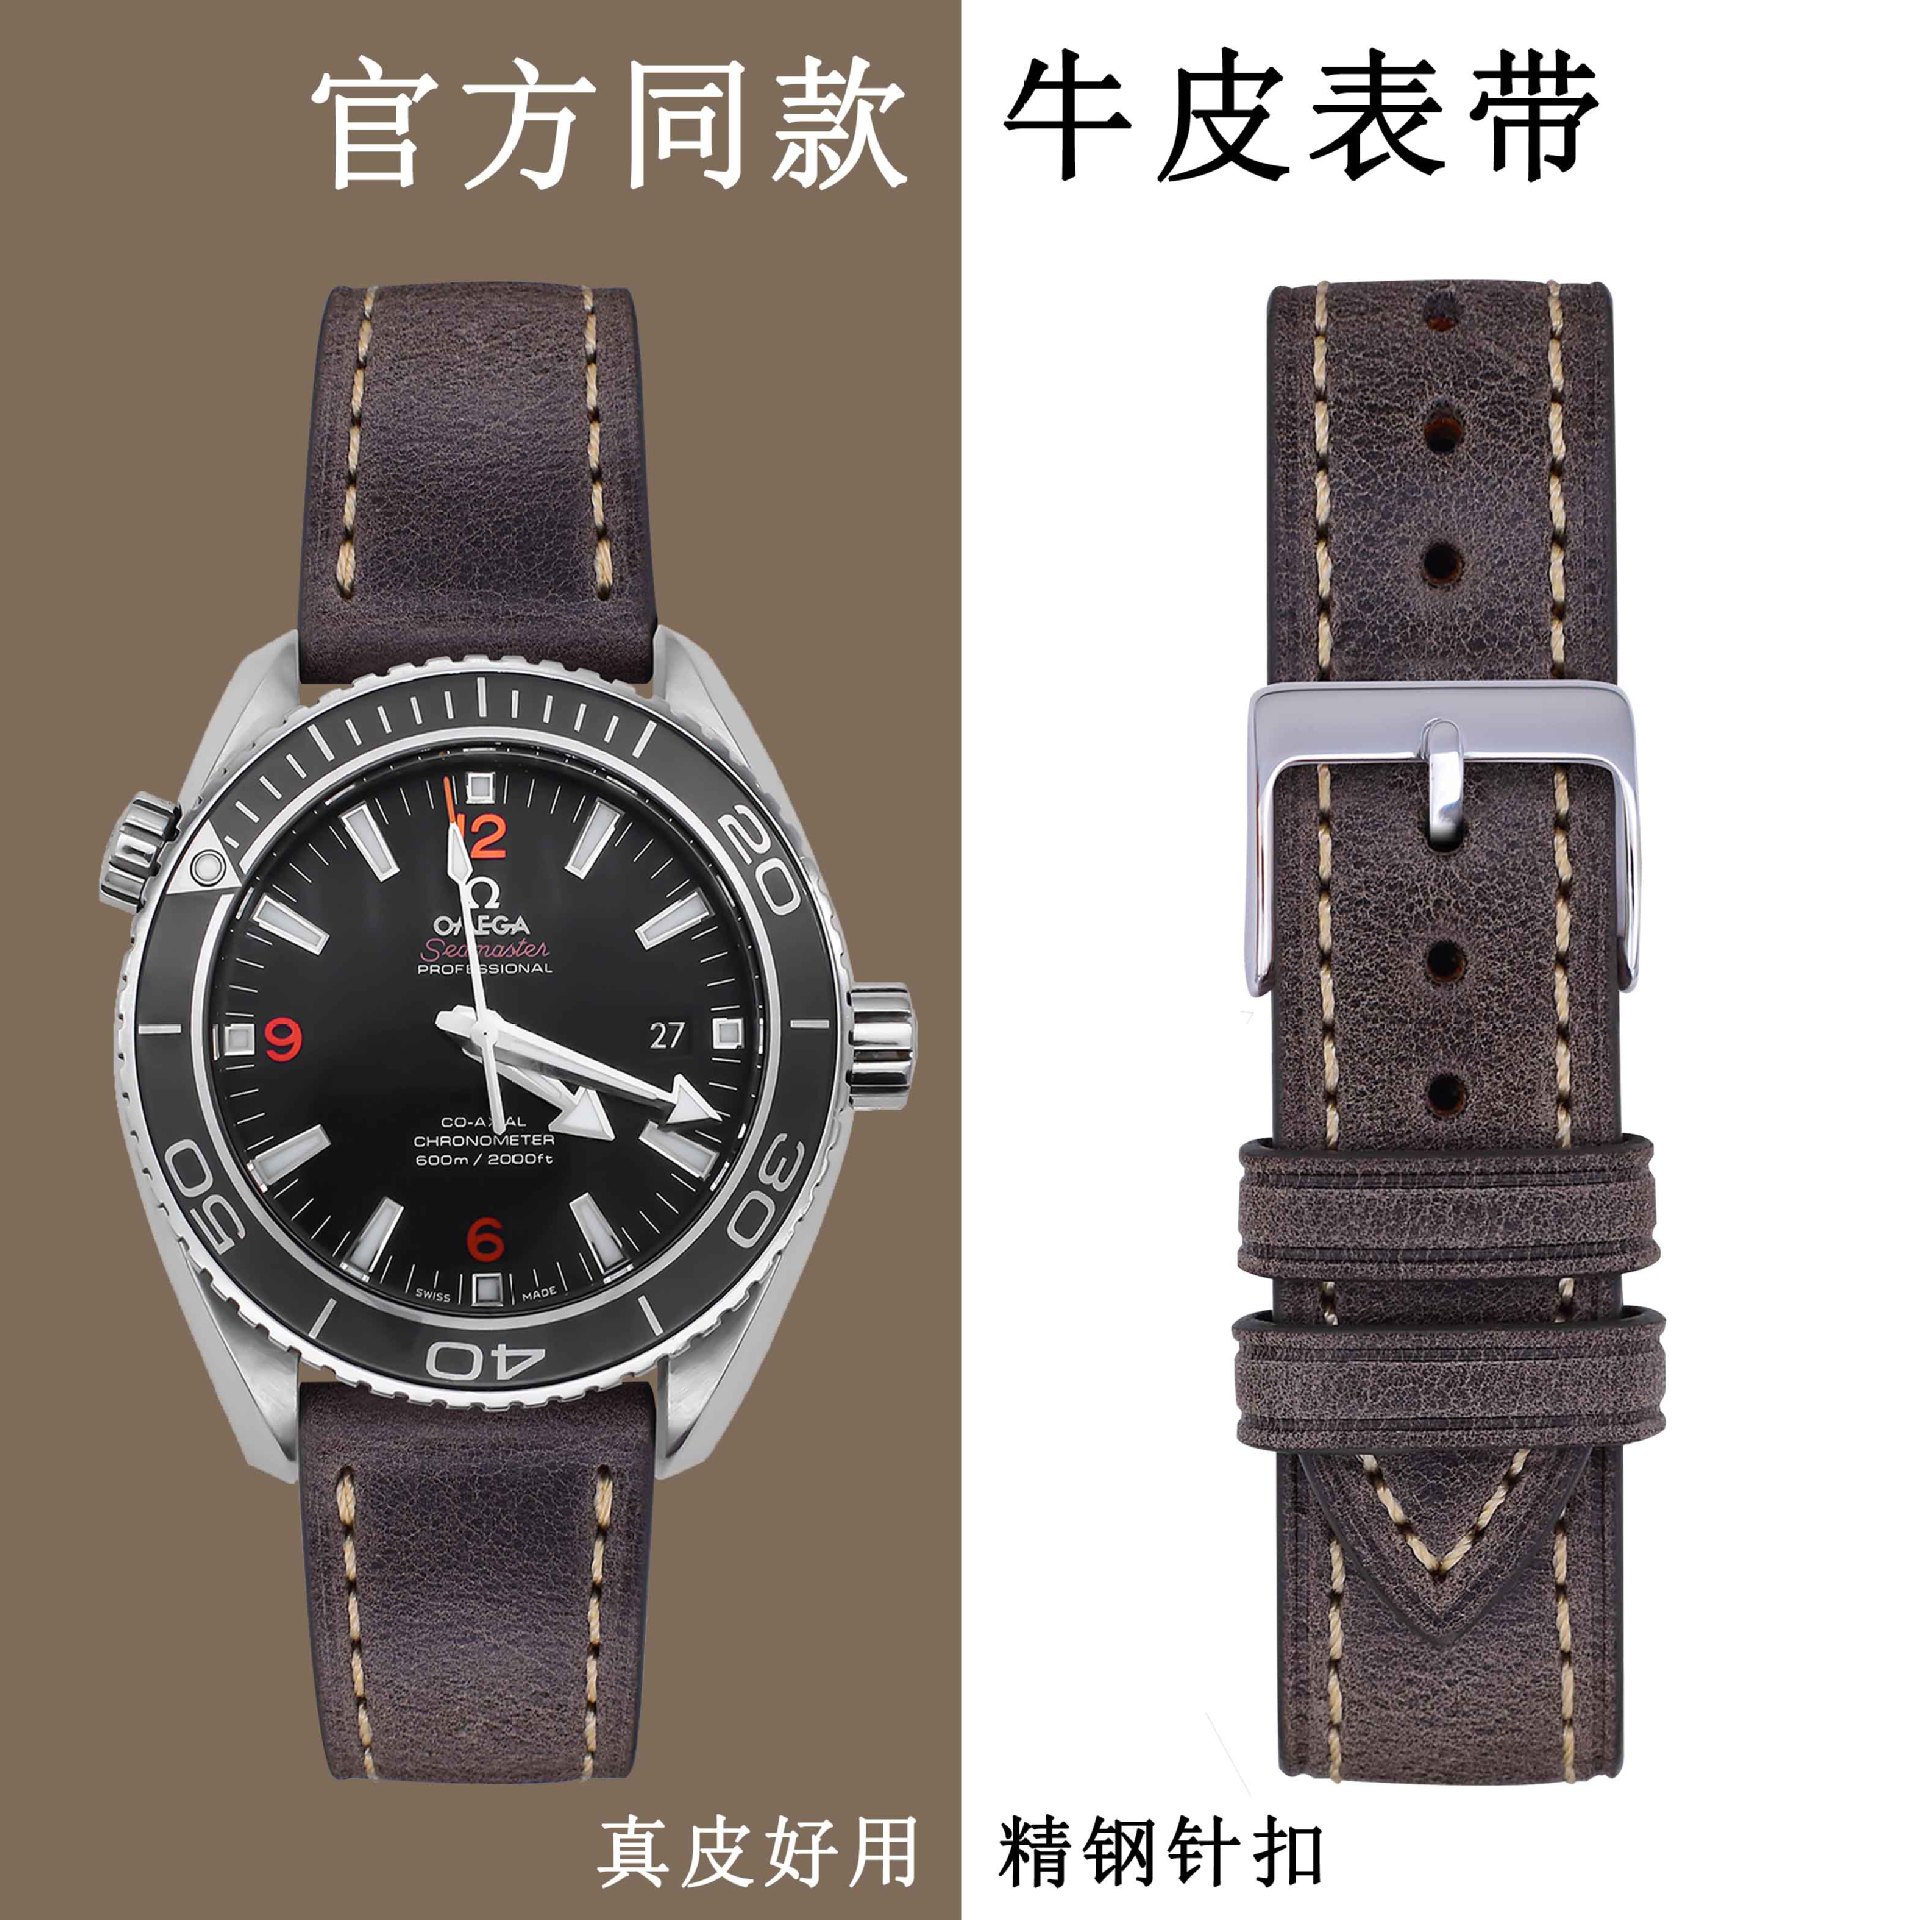 Đồng hồ Đồng hồ da dây đeo Nam Đồng bằng da thật đồng hồ da dây đeo phù hợp Omega tinh dịch sterculiae lychnophorae DW dây đồng hồ da nguyên chất